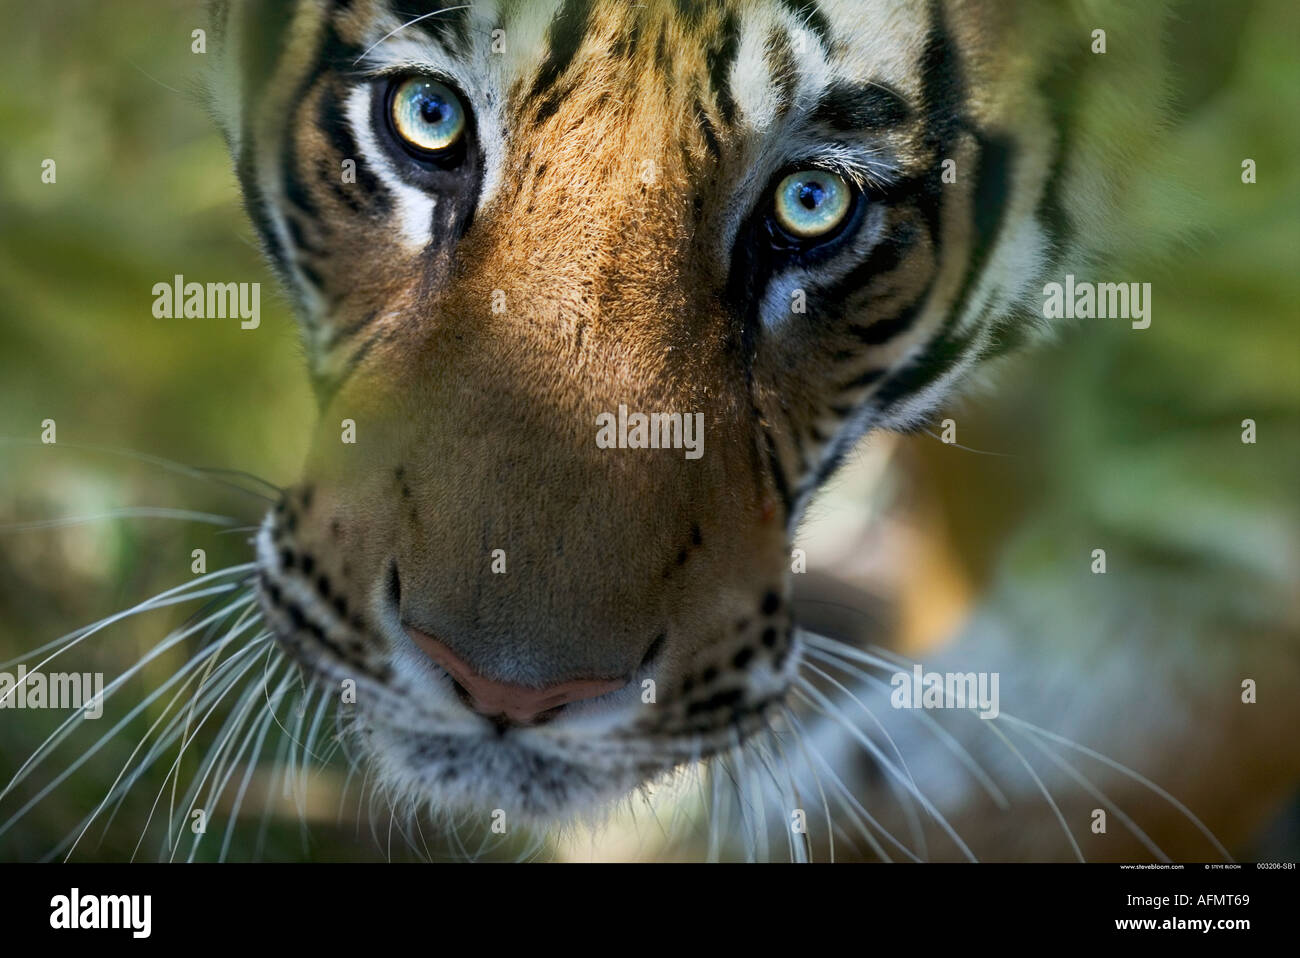 Bengal Tiger looking up Bandhavgarh India Stock Photo